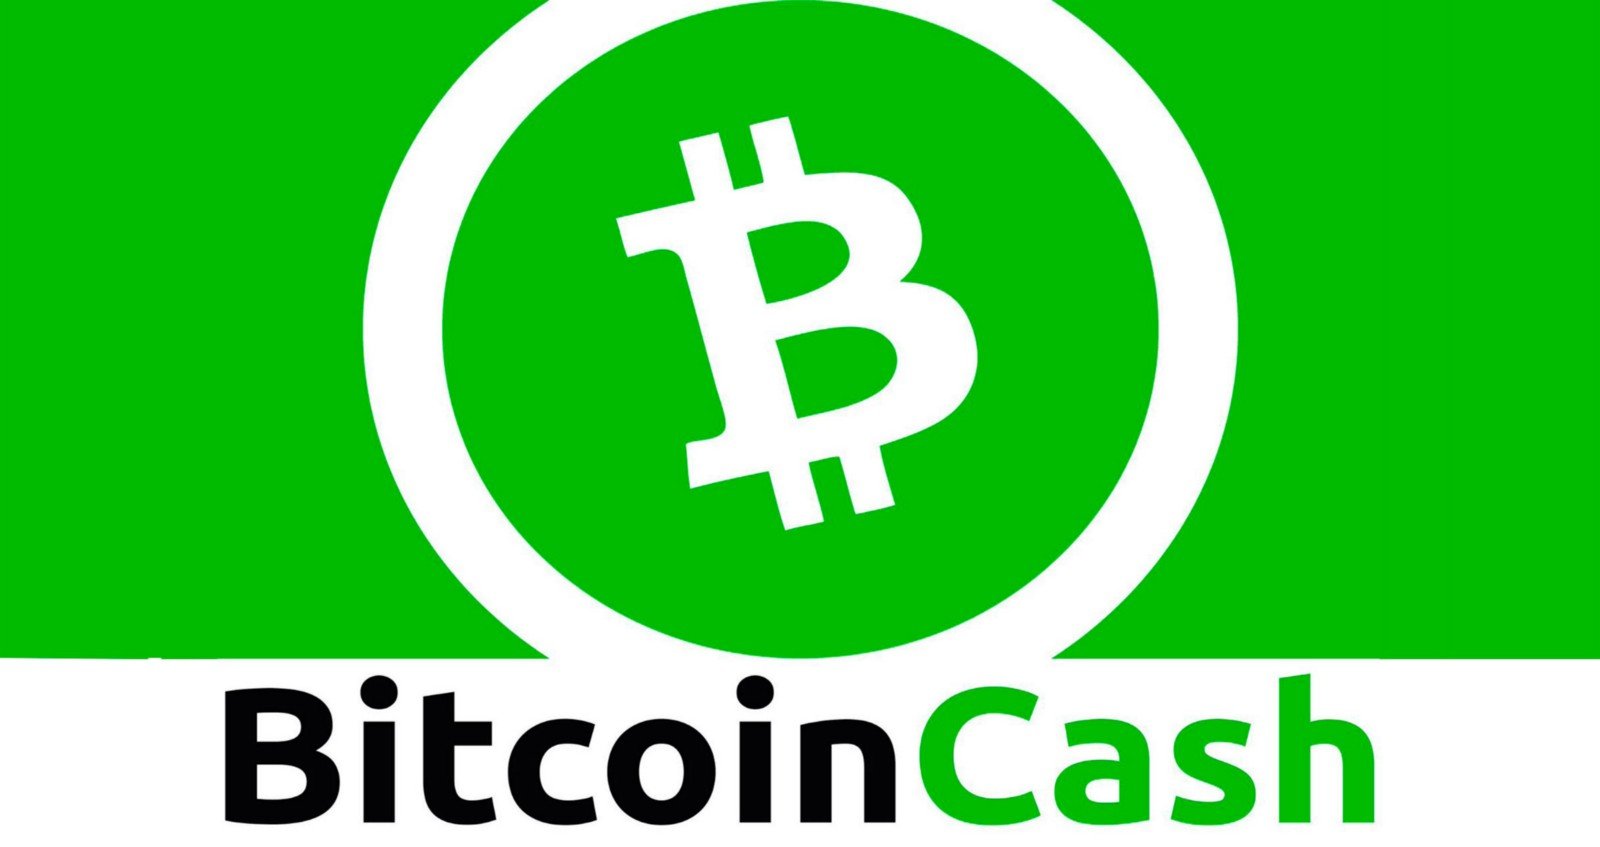 Bitcoin Cash Betting